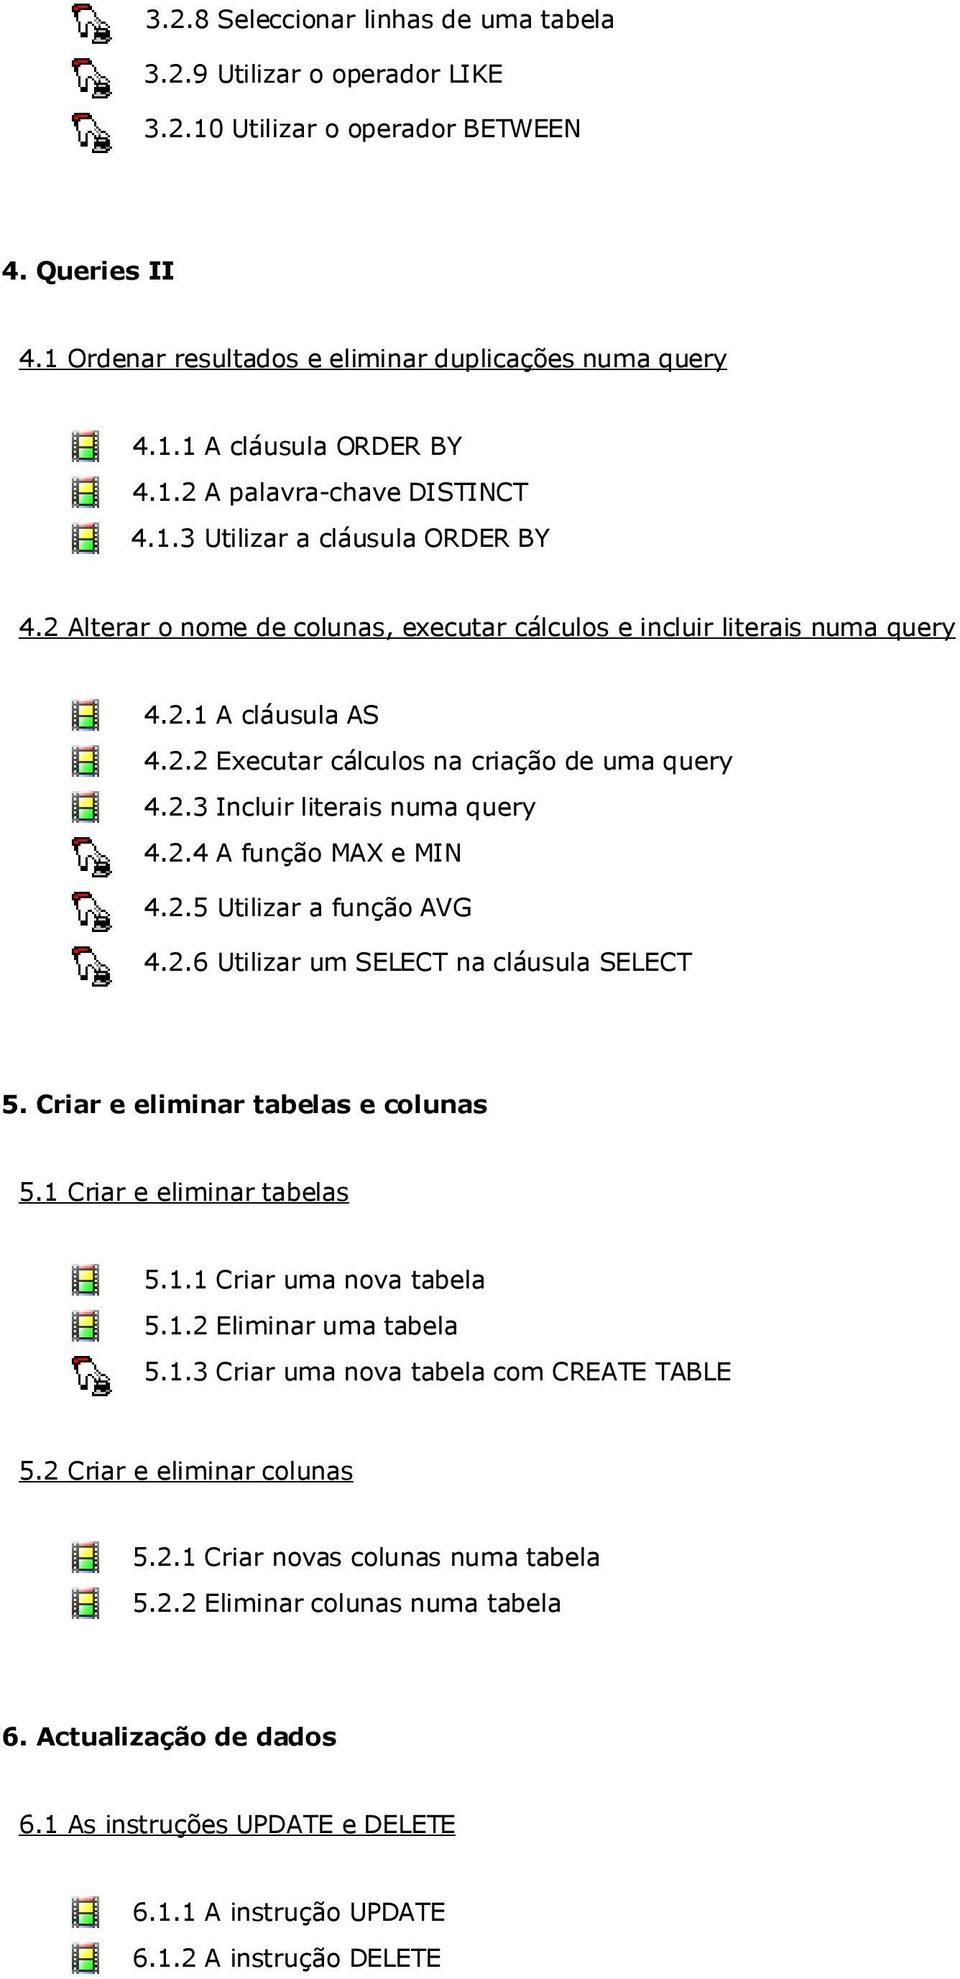 2.3 Incluir literais numa query 4.2.4 A função MAX e MIN 4.2.5 Utilizar a função AVG 4.2.6 Utilizar um SELECT na cláusula SELECT 5. Criar e eliminar tabelas e colunas 5.1 Criar e eliminar tabelas 5.1.1 Criar uma nova tabela 5.